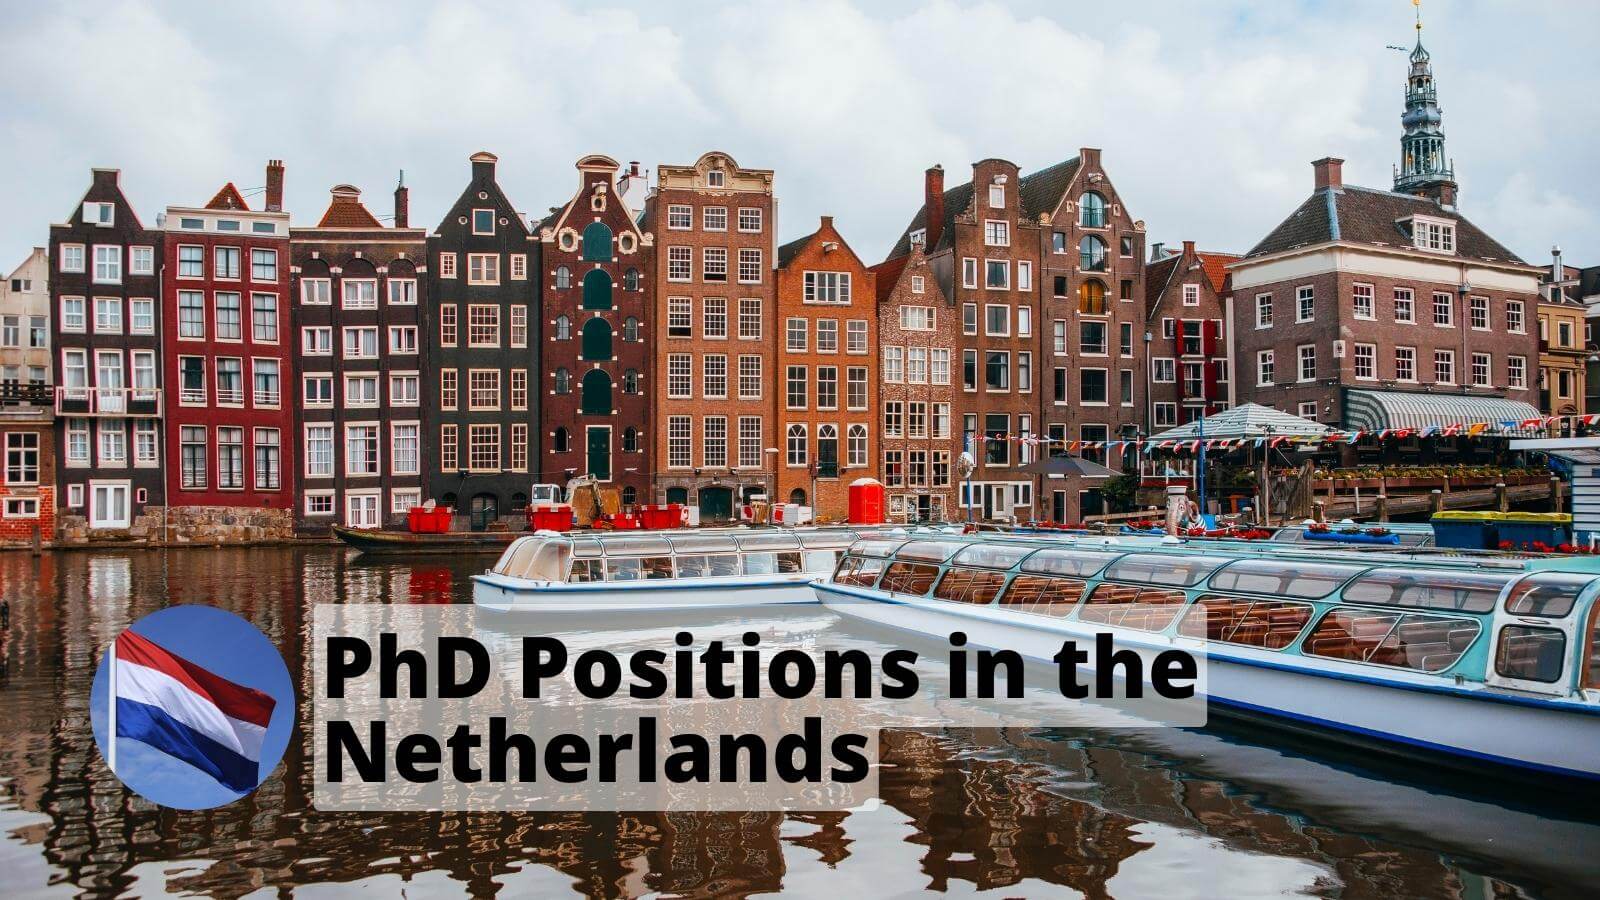 PhD Positions, vacancies, jobs in Netherlands